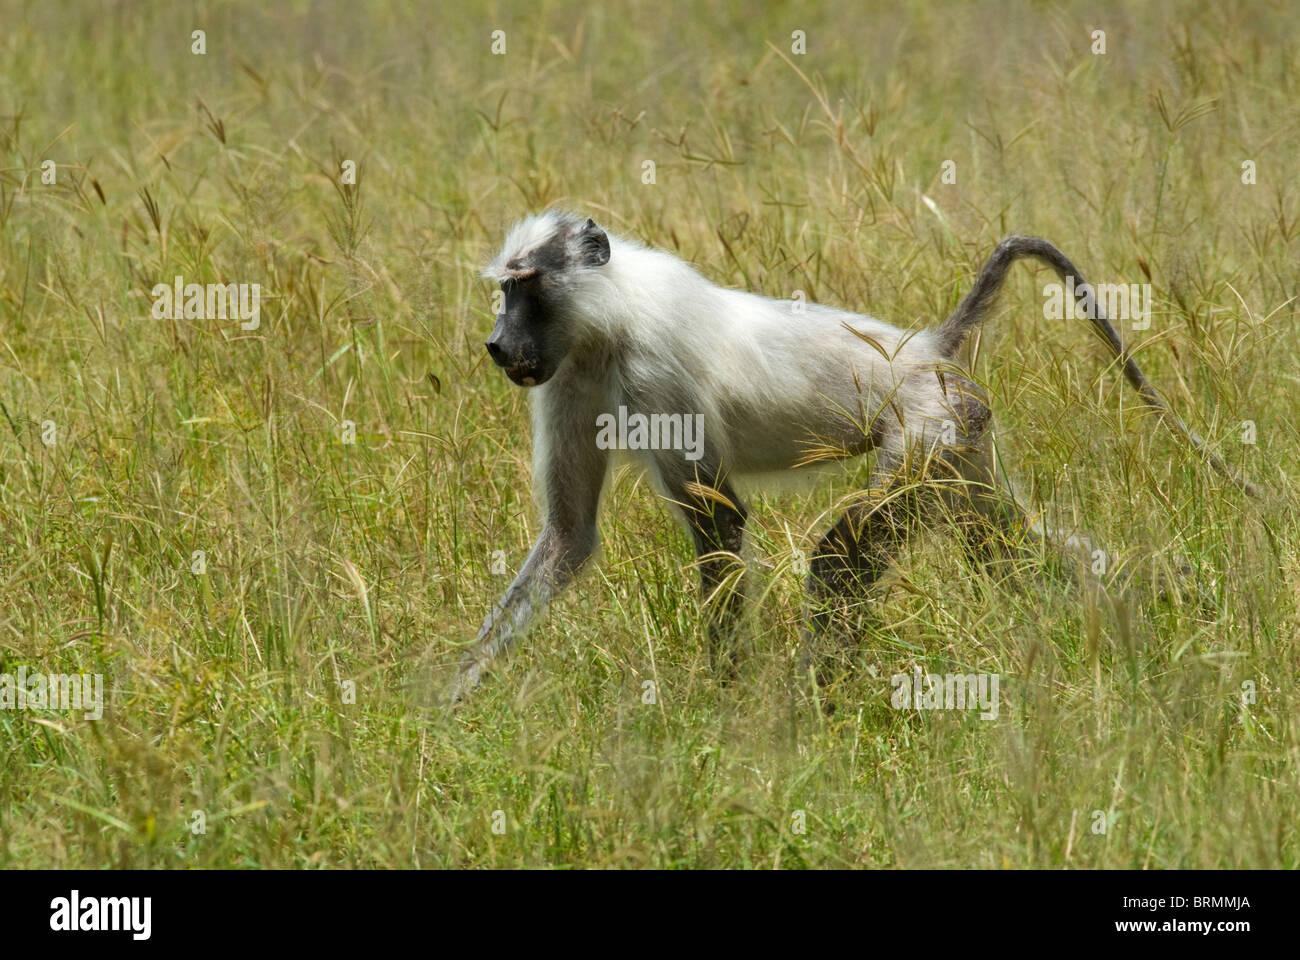 Un albino babuino amarillo caminar a través de la hierba alta. Foto de stock